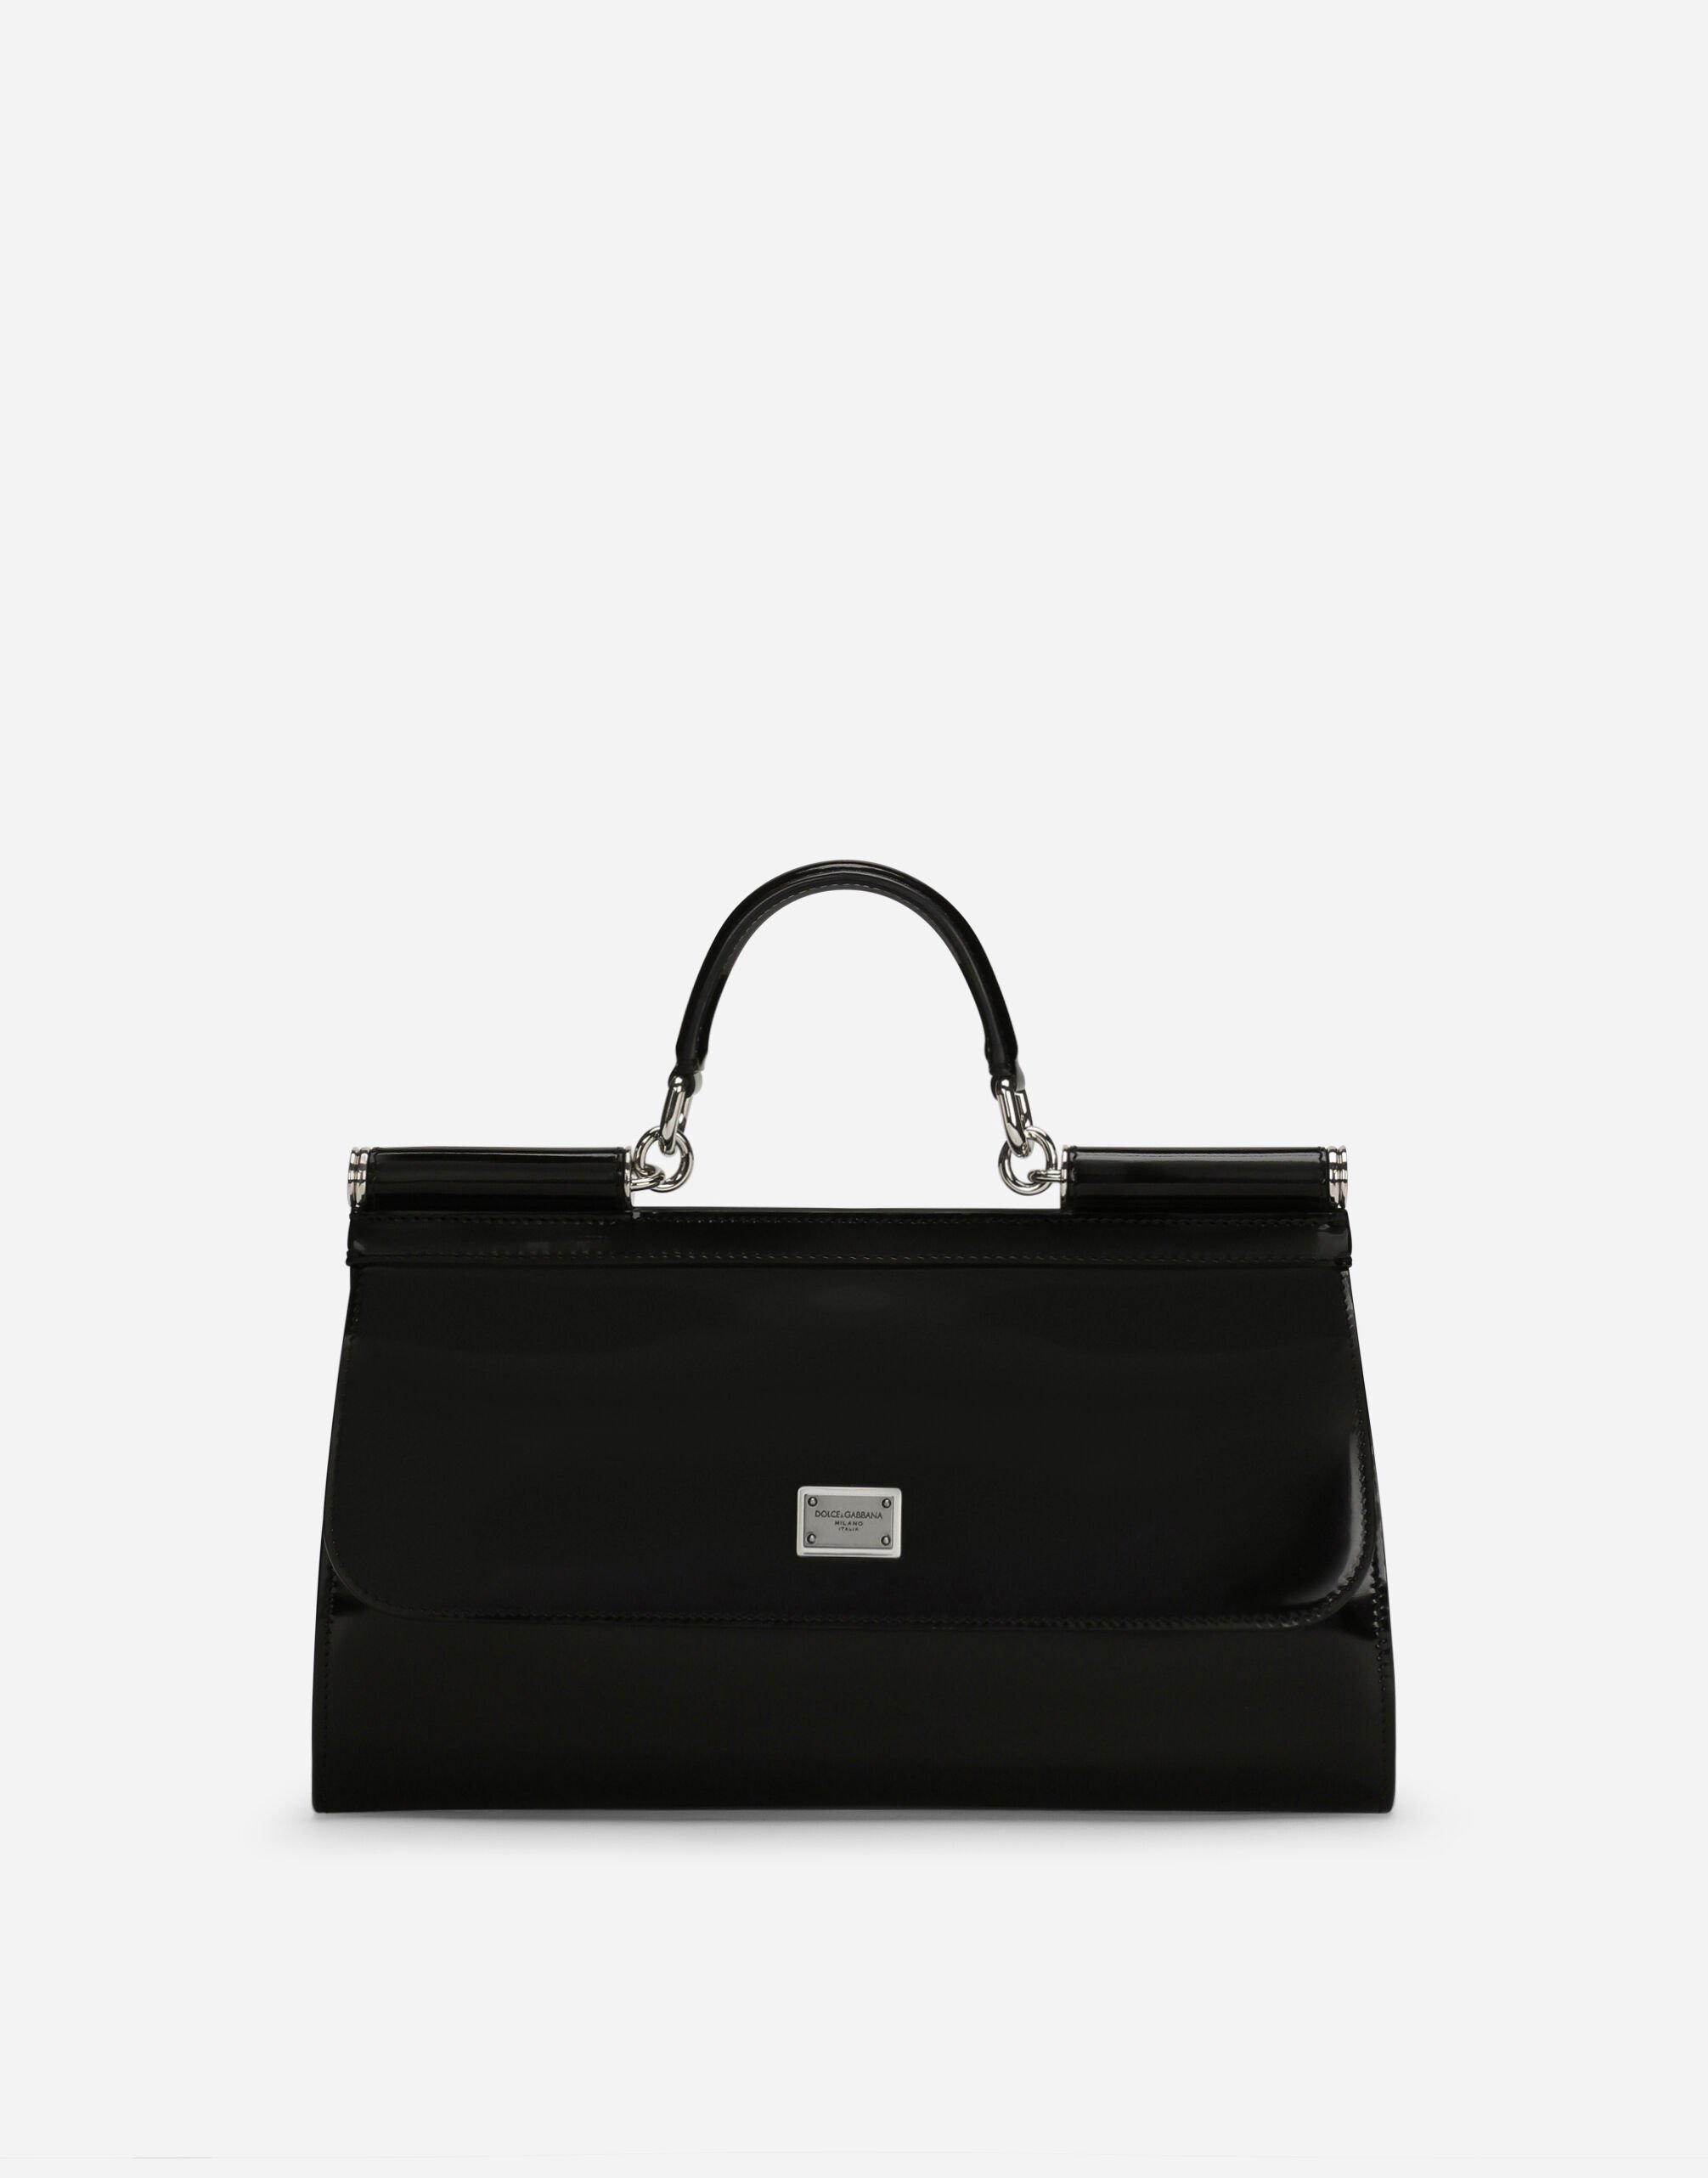 Dolce & Gabbana KIM DOLCE&GABBANA Polished calfskin Sicily bag Black VG6187VN187